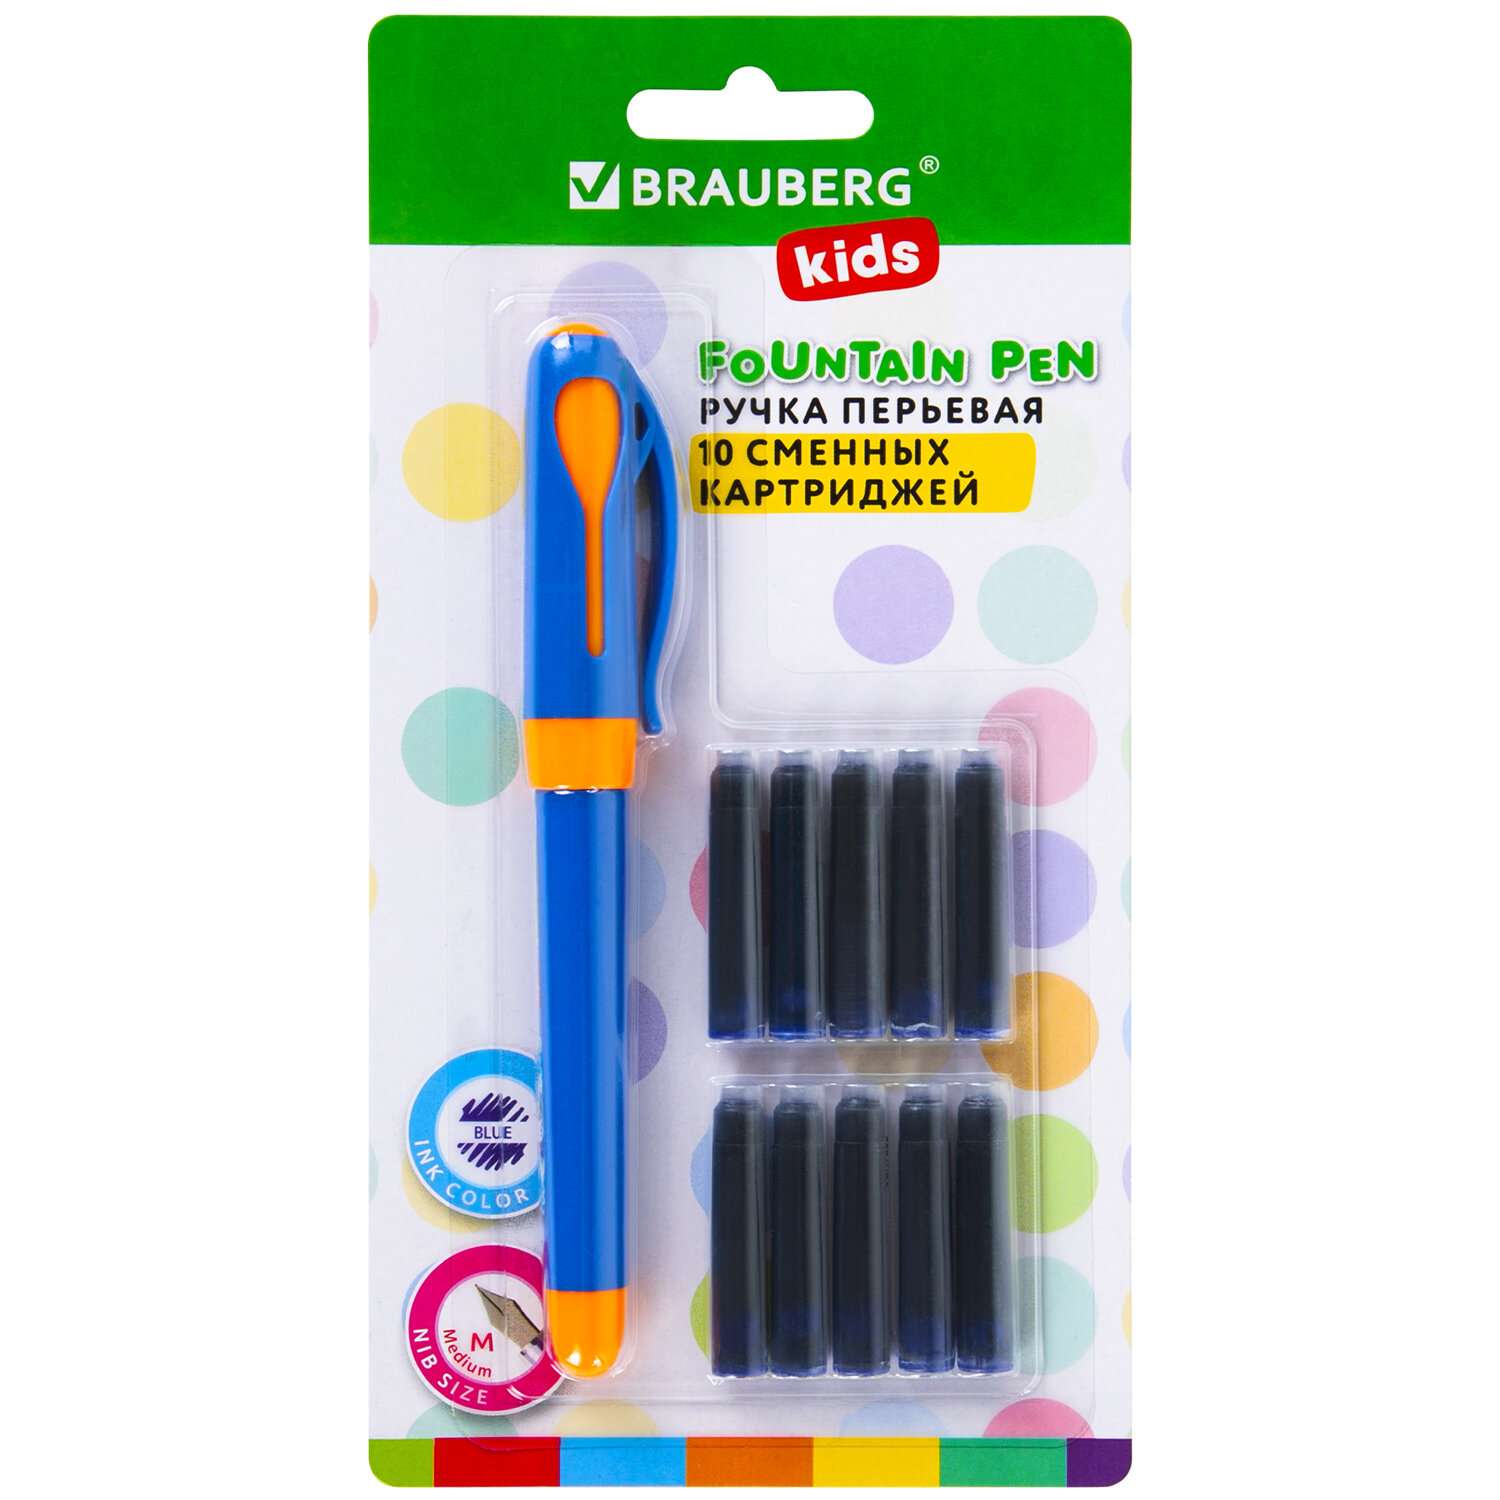 Перьевая ручка Brauberg с 10 сменными картриджами набор для каллиграфии - фото 10